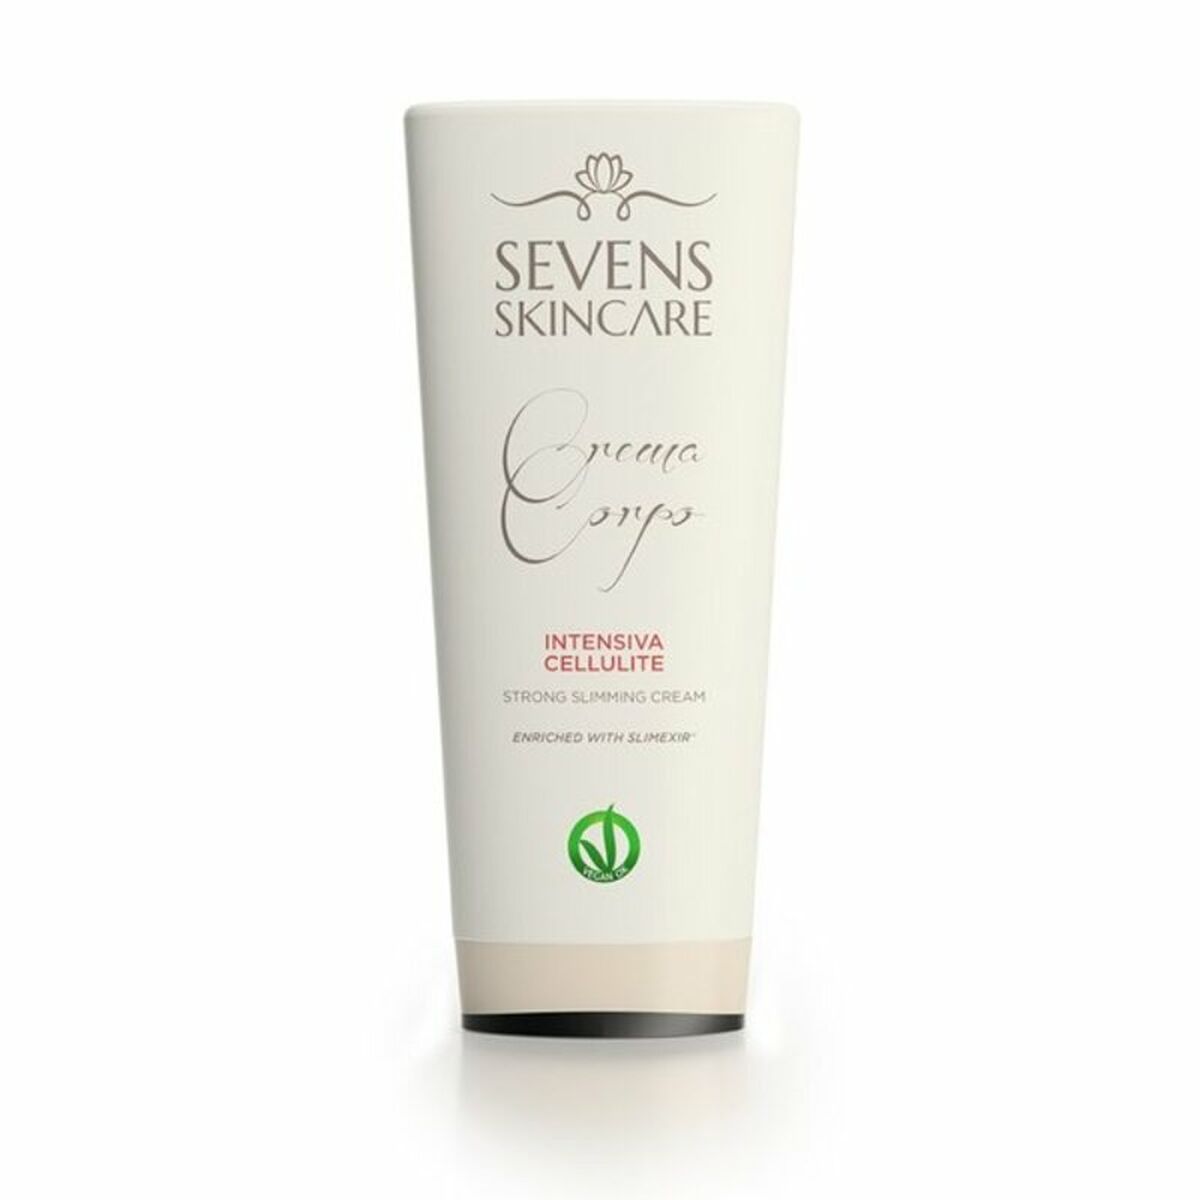 Crème Anti-Cellulite Intensiva Sevens Skincare Crema Corporal Intensiva Celulitis 200 ml